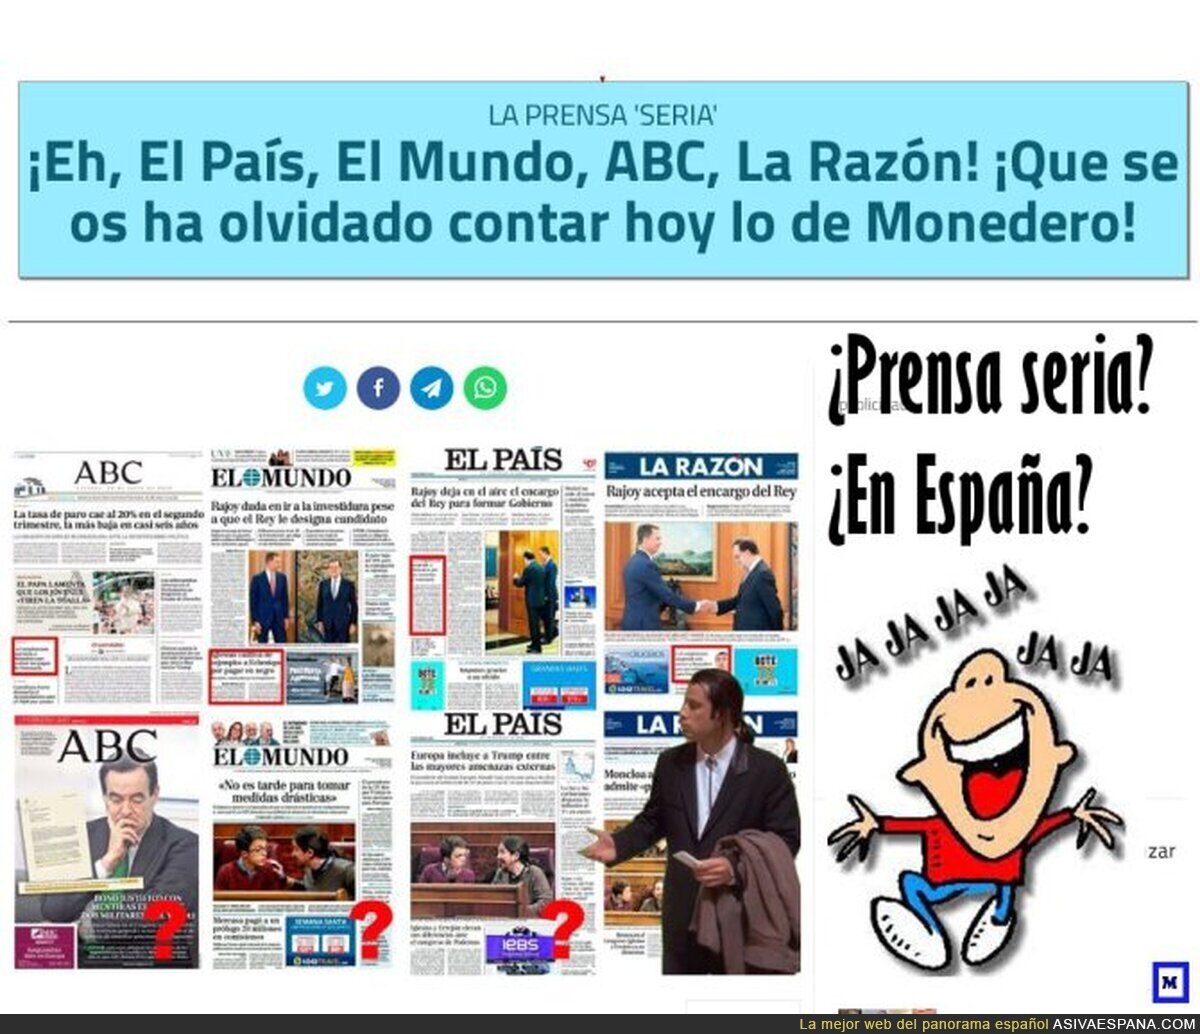 A la PPrensa "se le olvidó" publicar lo de Monedero